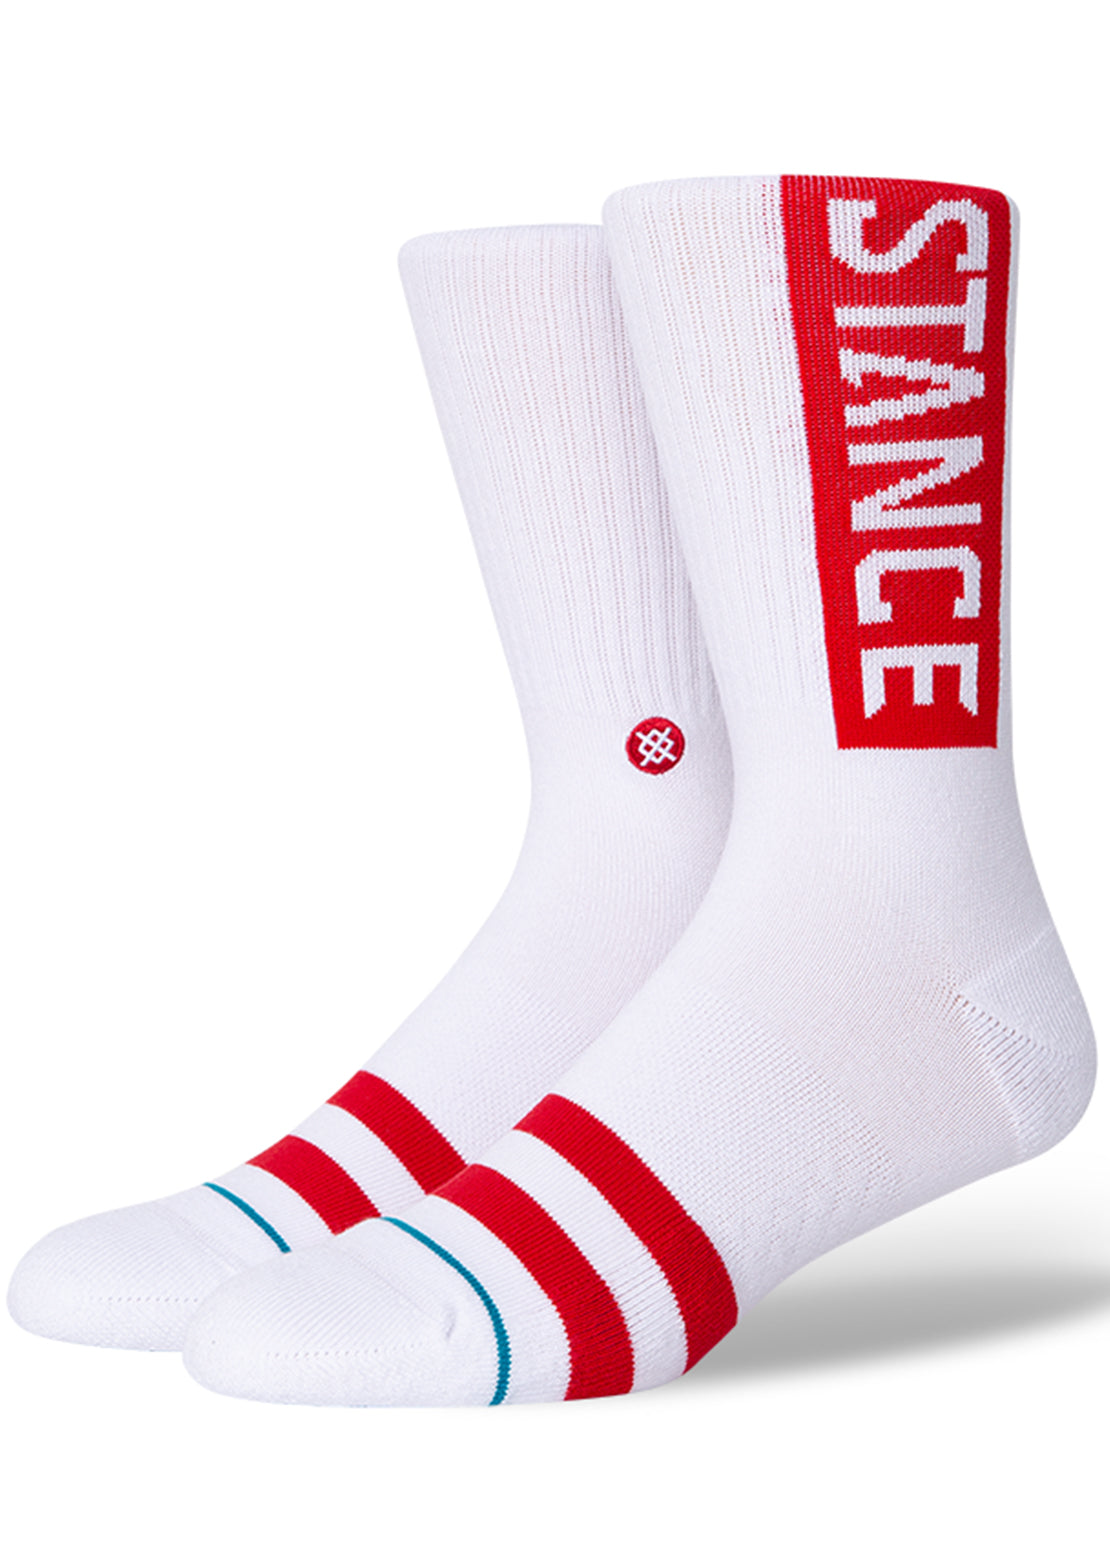 Stance Unisex Staples OG Socks White/Red